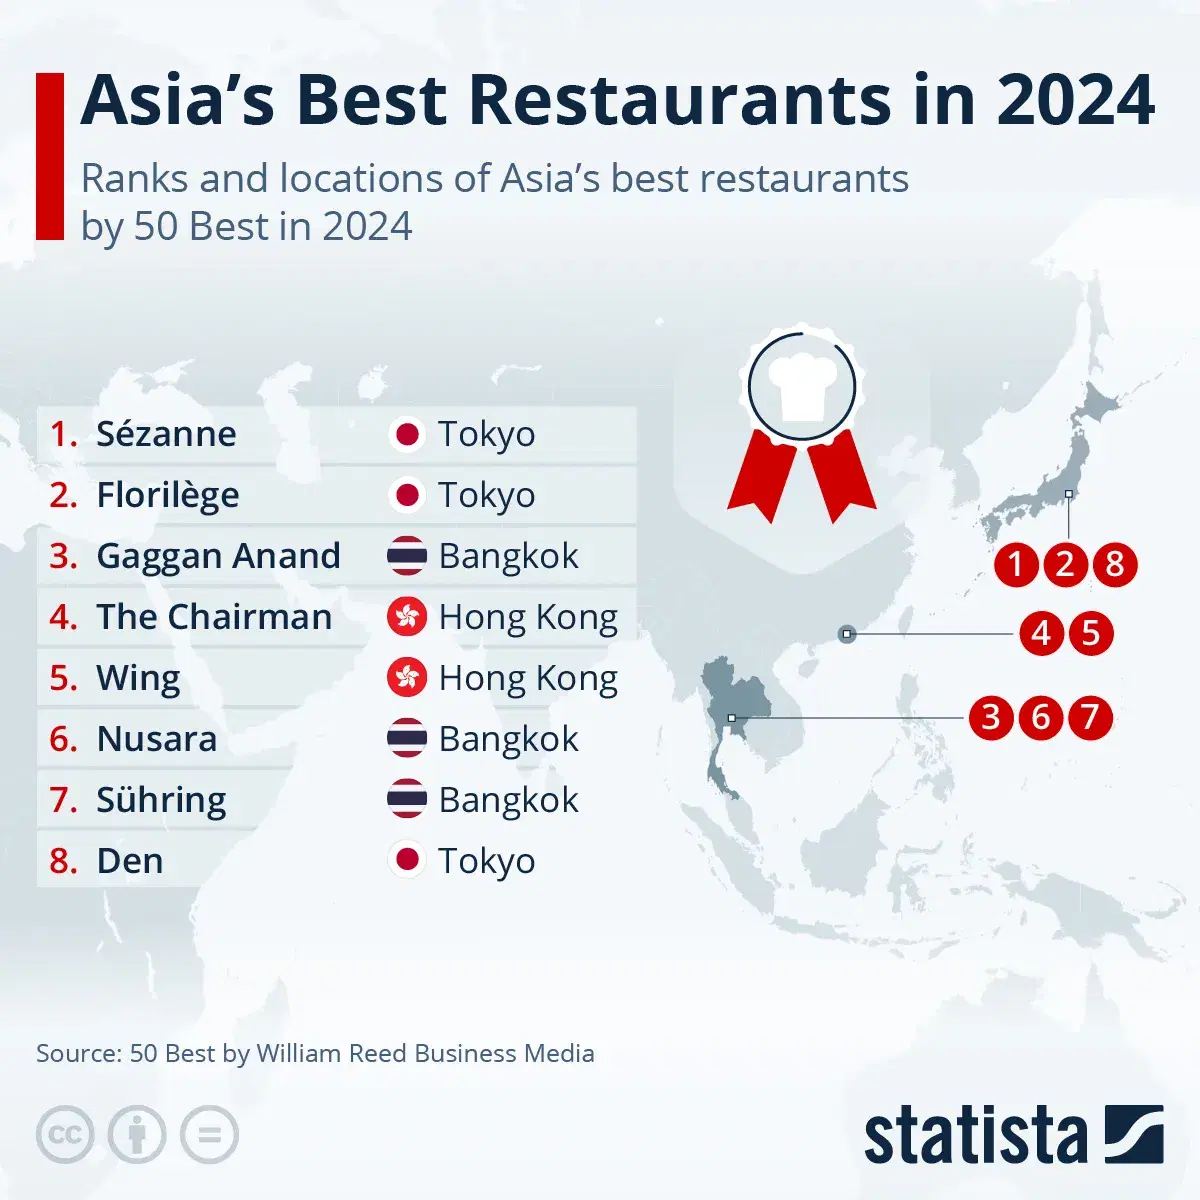 Asia’s Best Restaurants in 2024